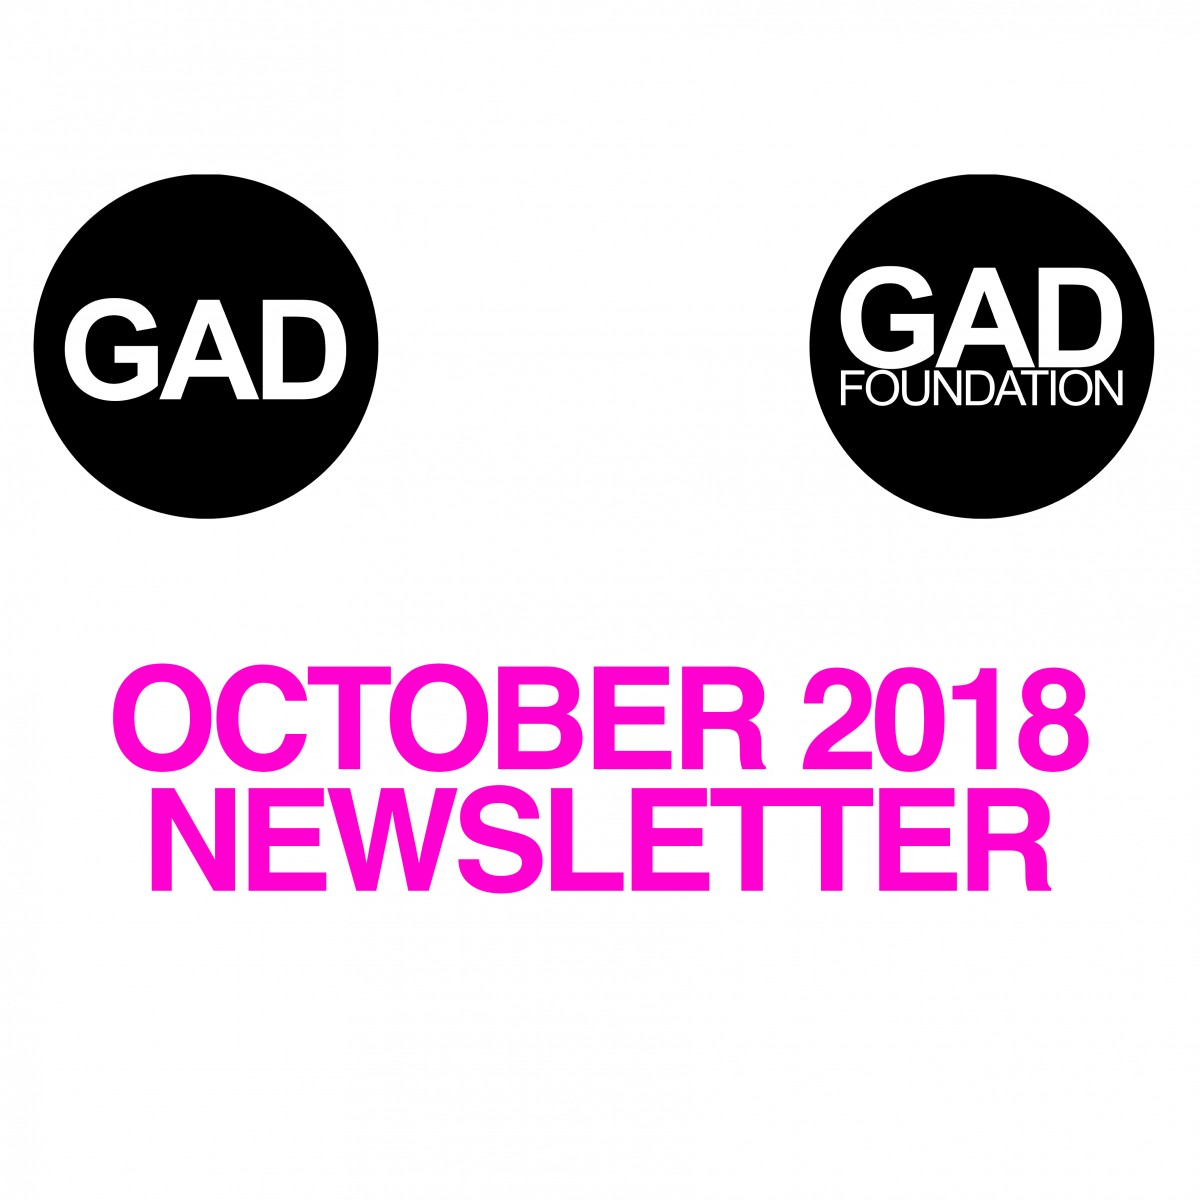 October 2018 Newsletter